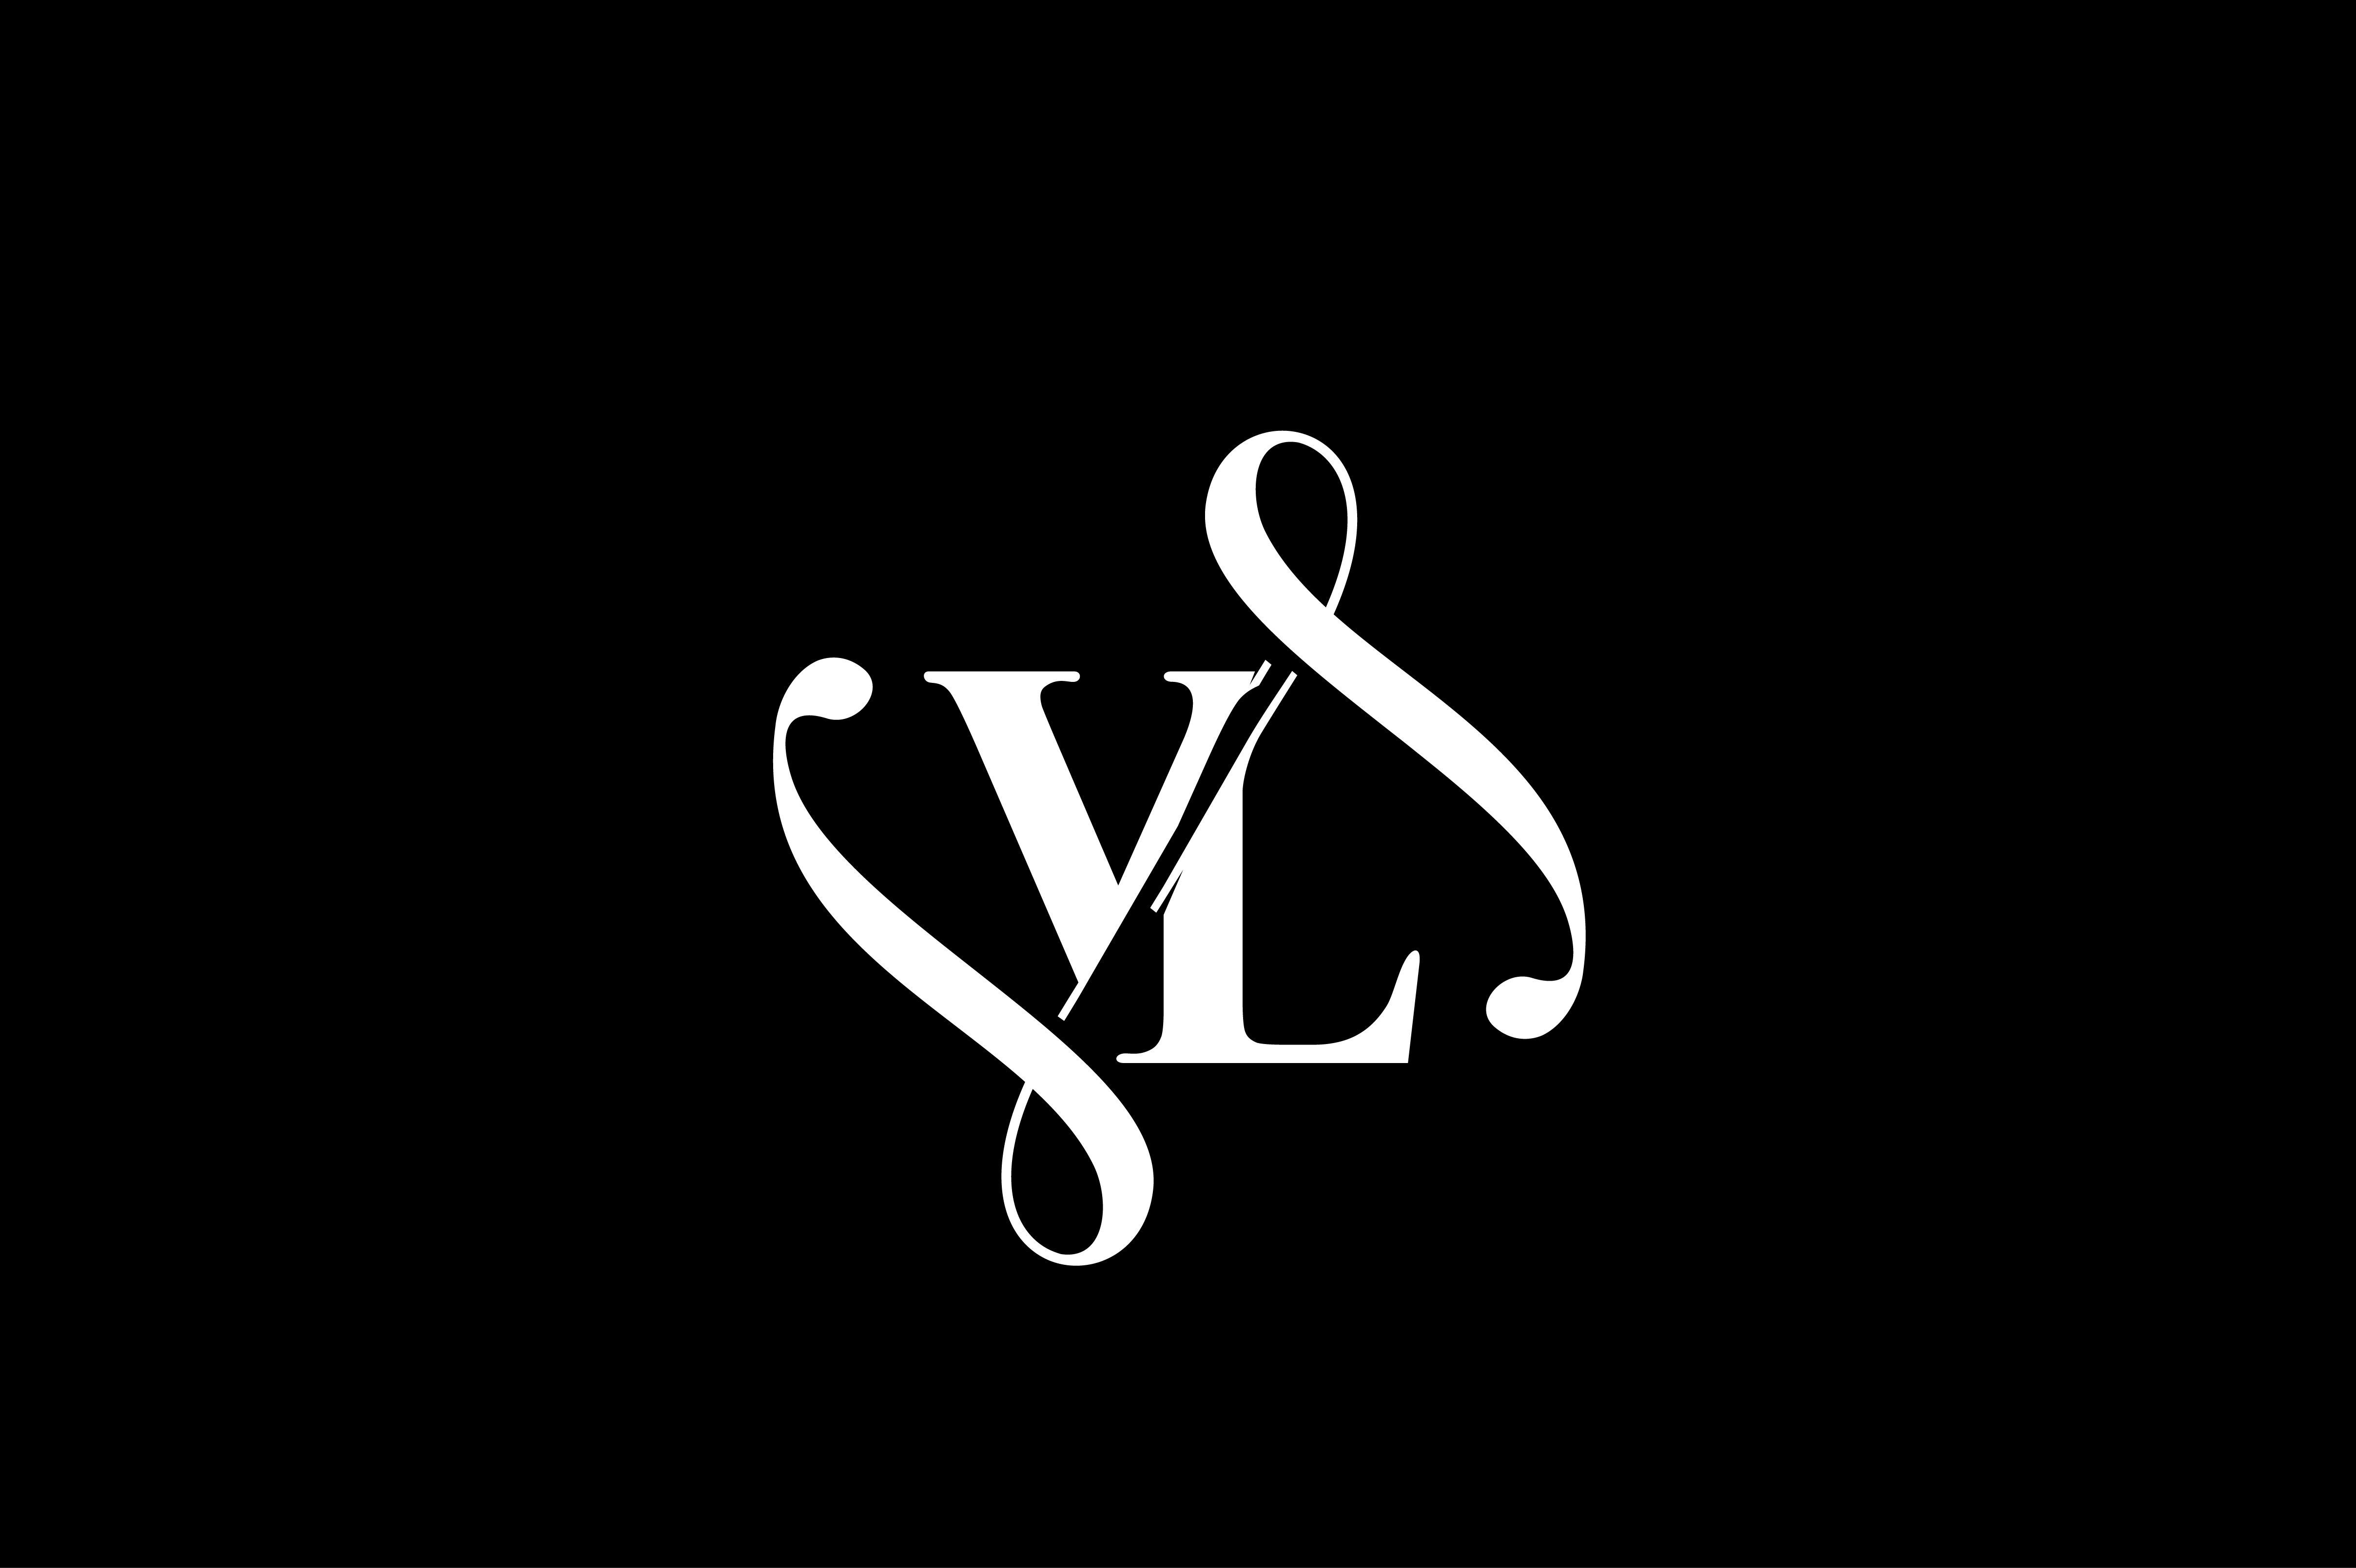 vl logo design